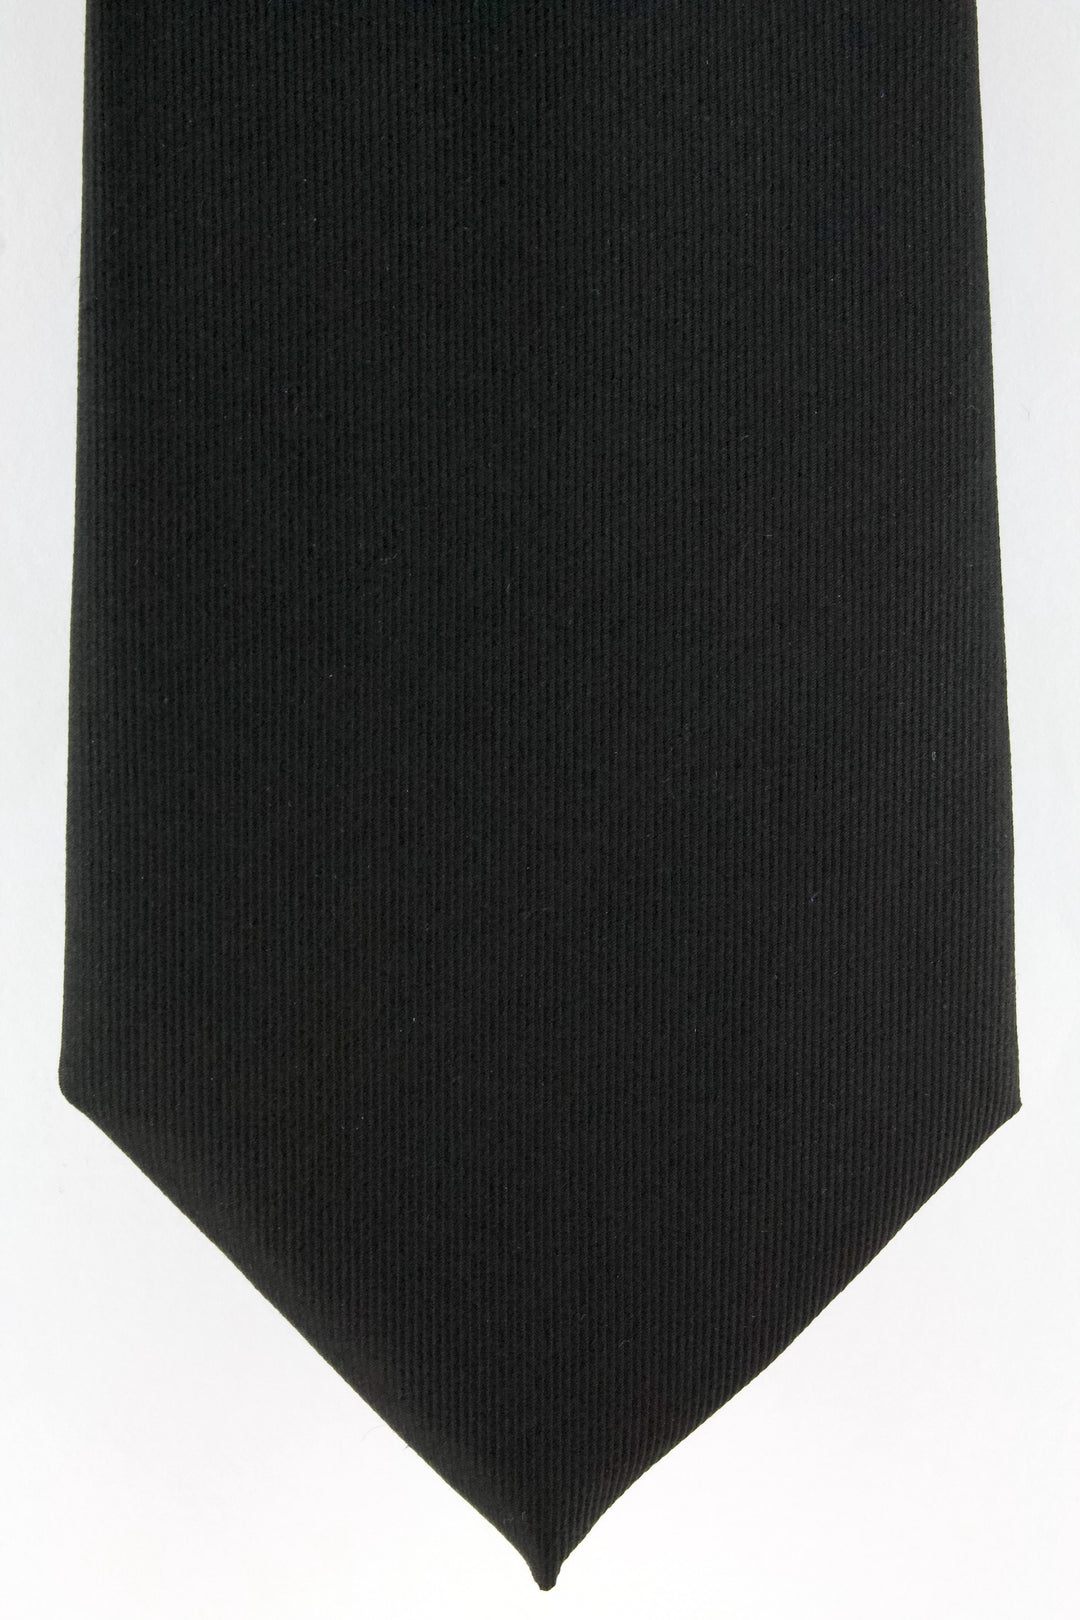 Cravate en soie tissée noir uni